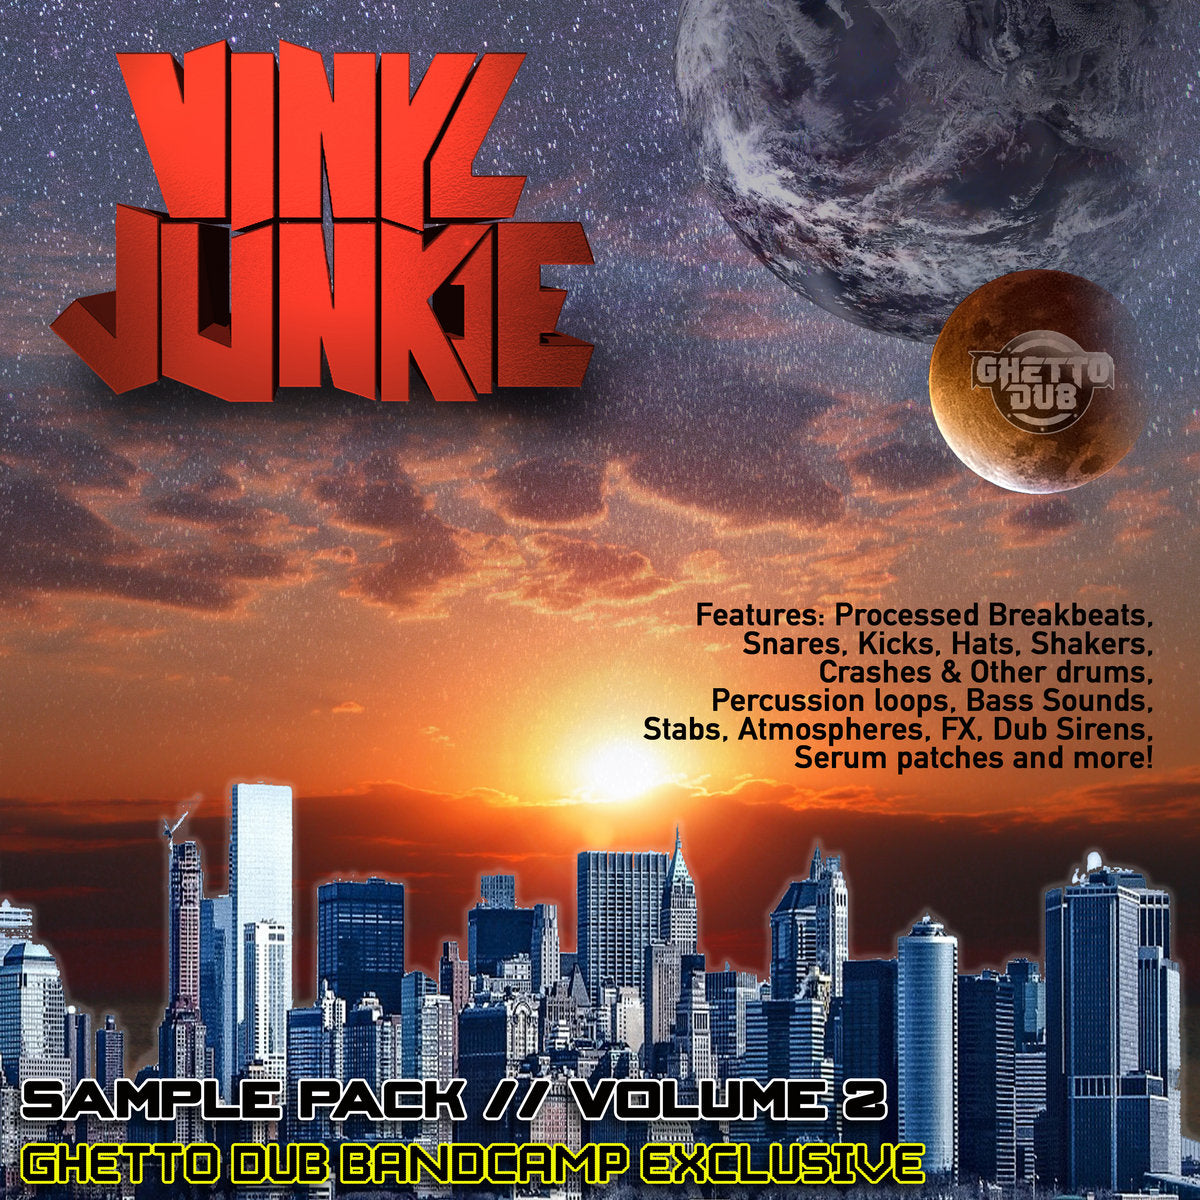 Vinyl Junkie - Sample Pack - Vol 2 Oldskool / Hardcore / Jungle and Drum & Bass: Samples